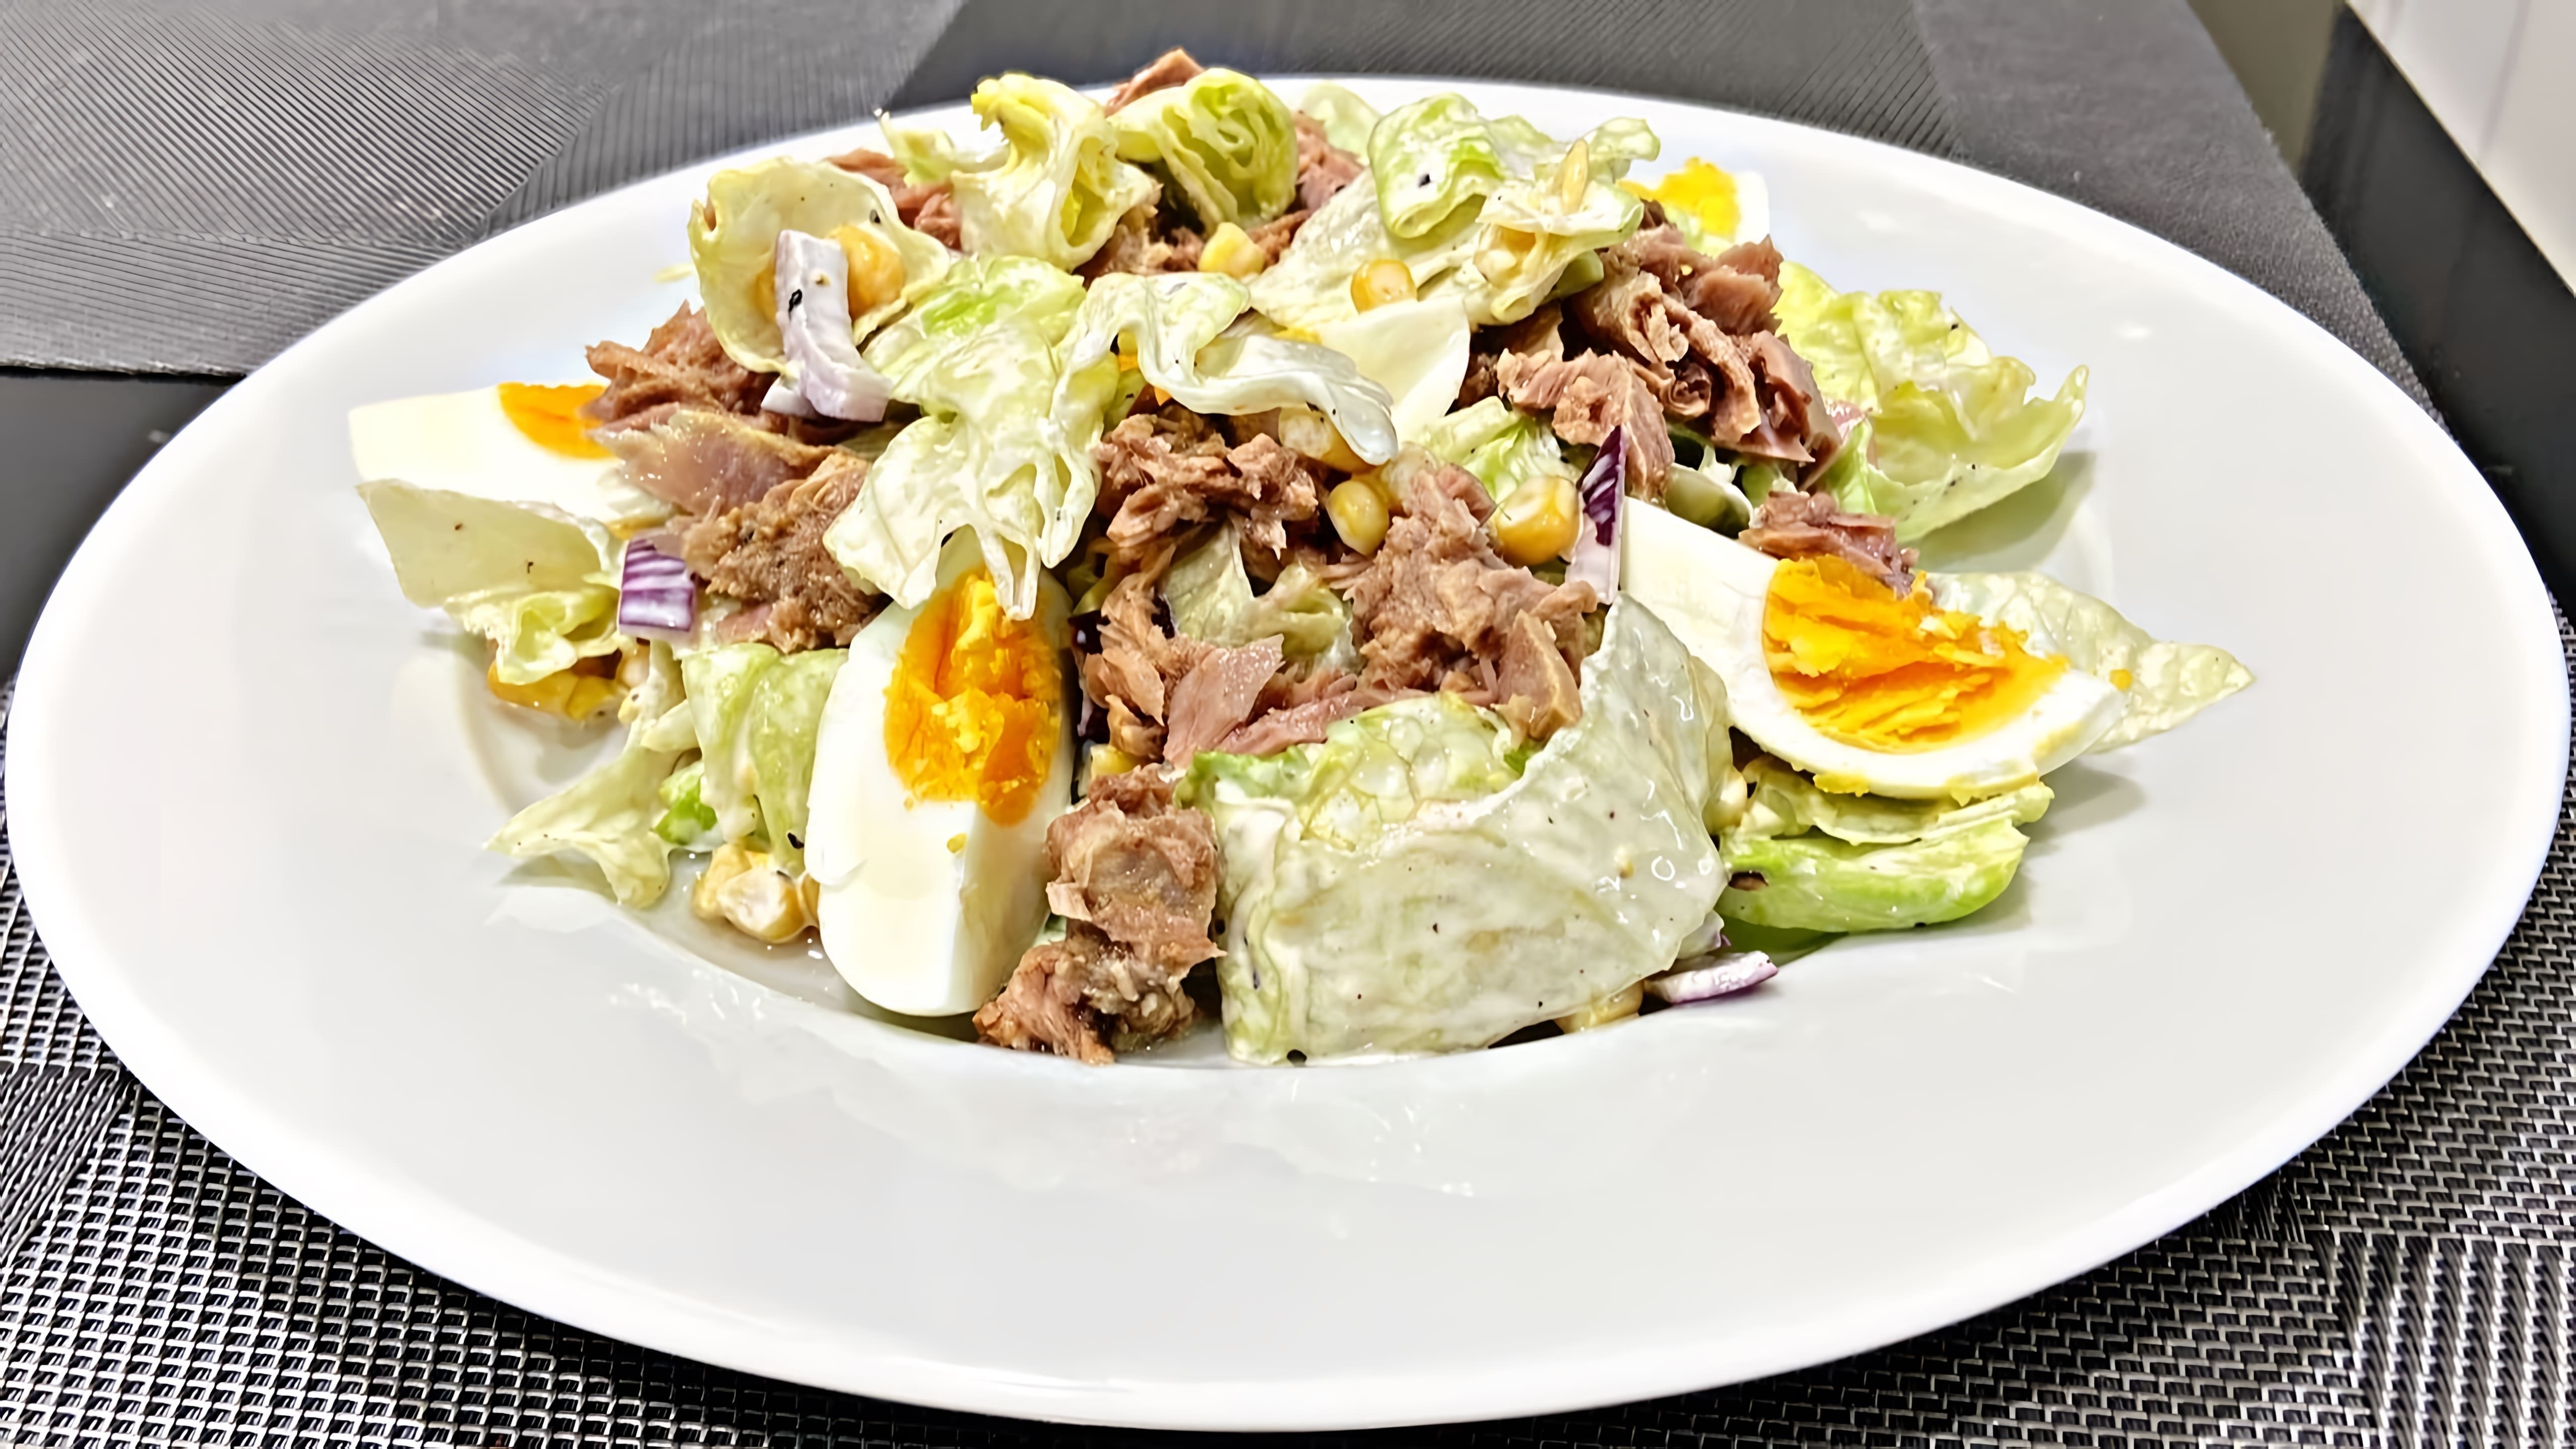 Салат с тунцом - это вкусное и полезное блюдо, которое можно приготовить в домашних условиях